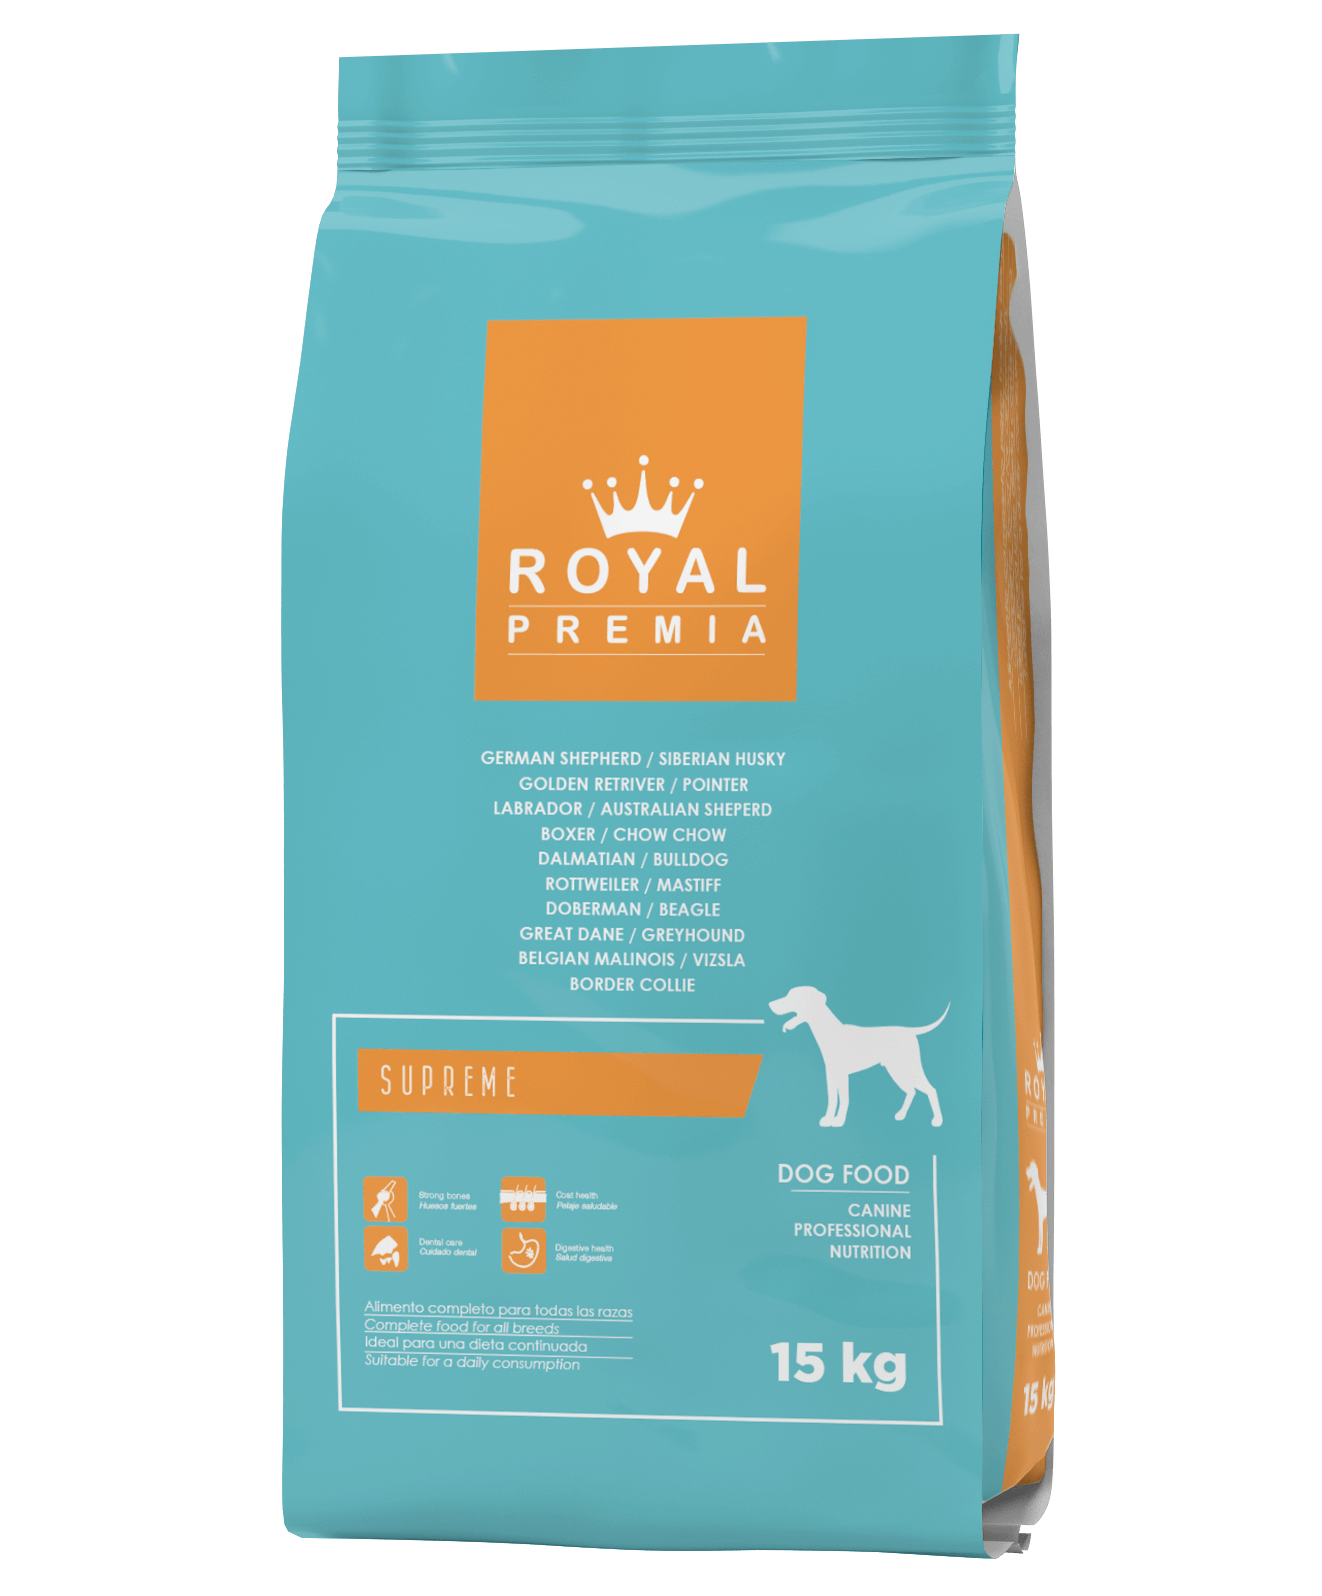 Royal Premia Dry Dog Food 15kg Sharjah, Dubai